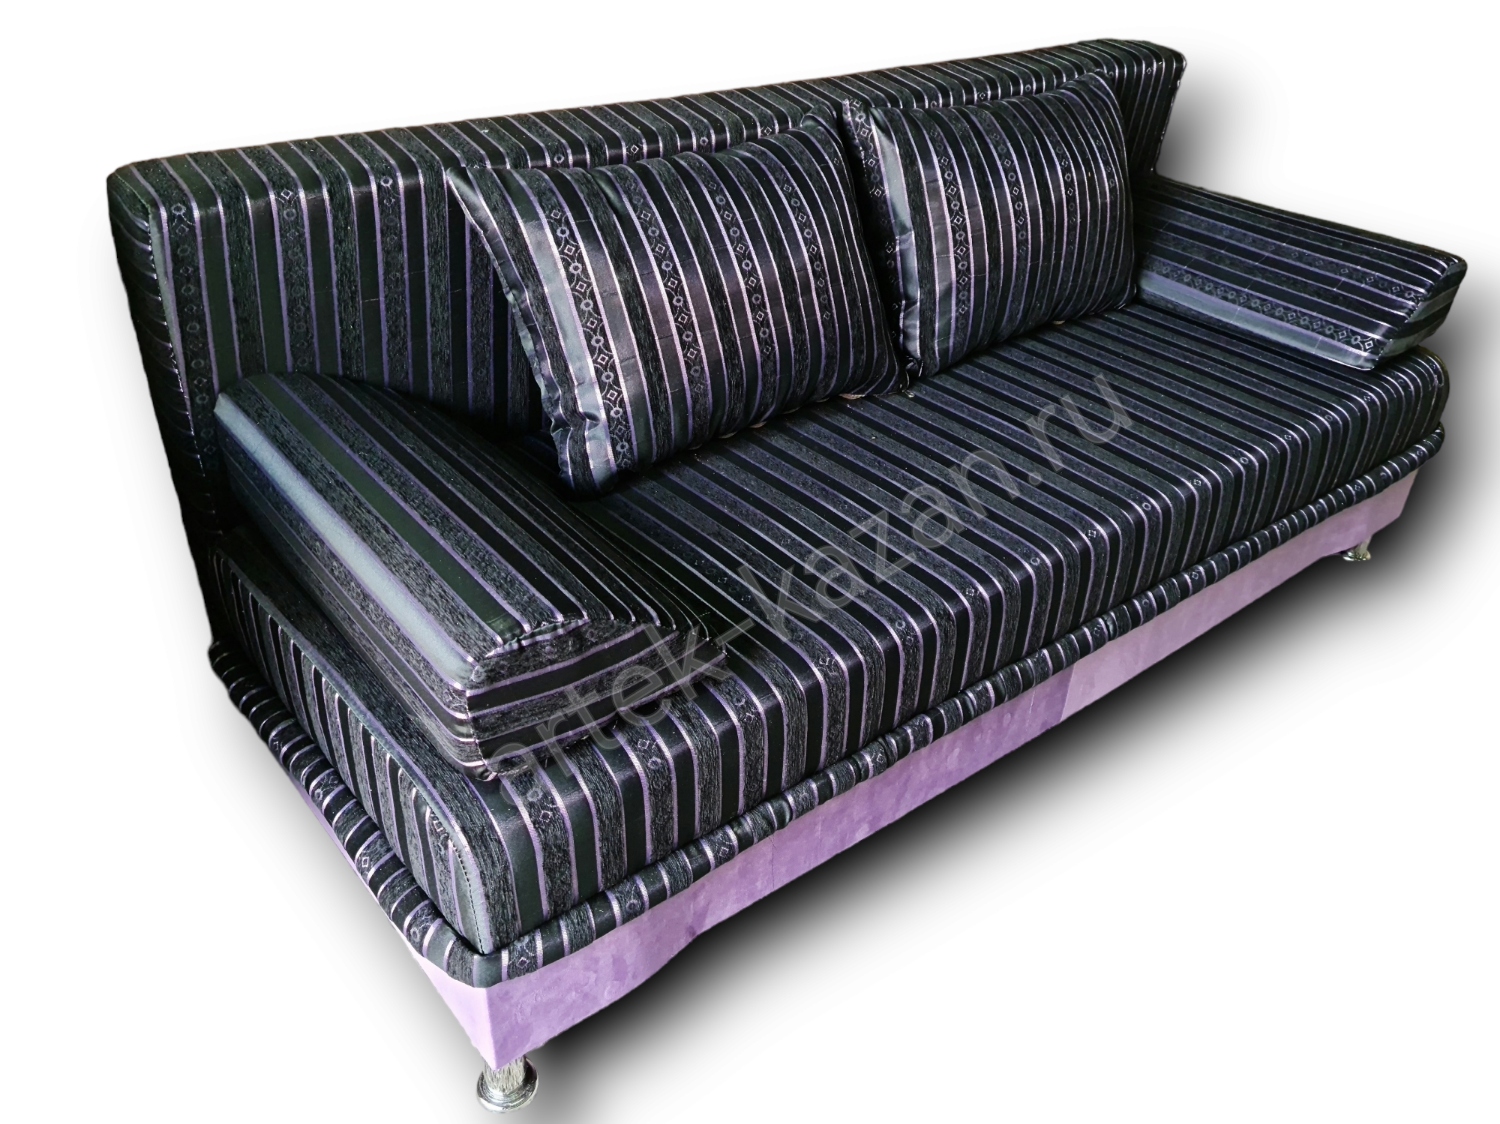 диван еврокнижка Эконом фото № 112. Купить недорогой диван по низкой цене от производителя можно у нас.